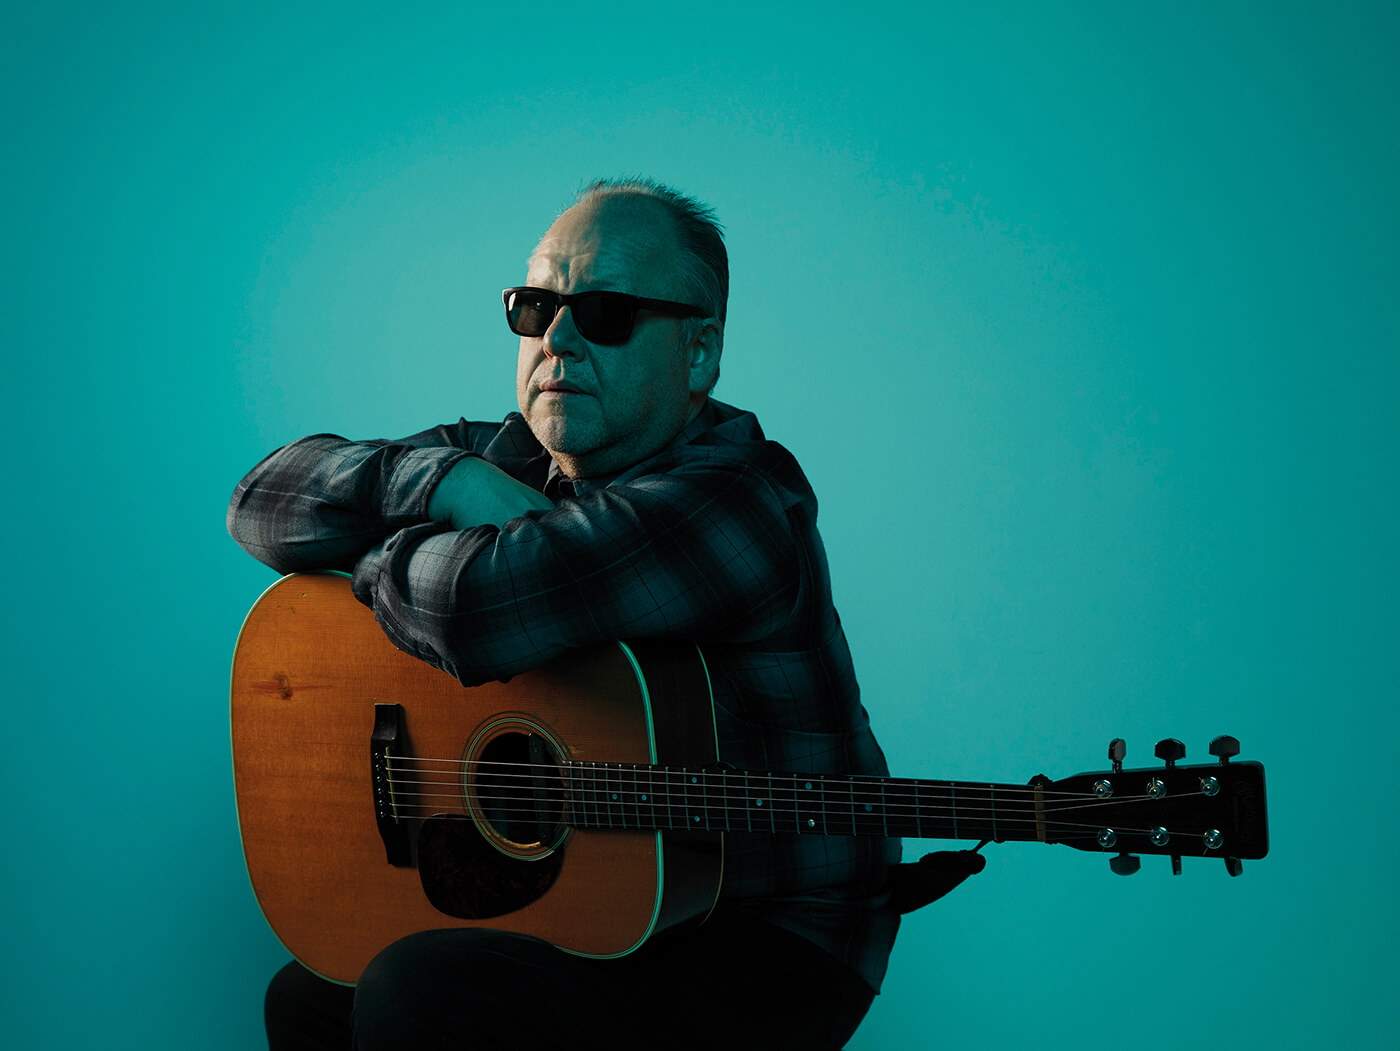 Pixies Black Francis landscape shot elbows on guitar